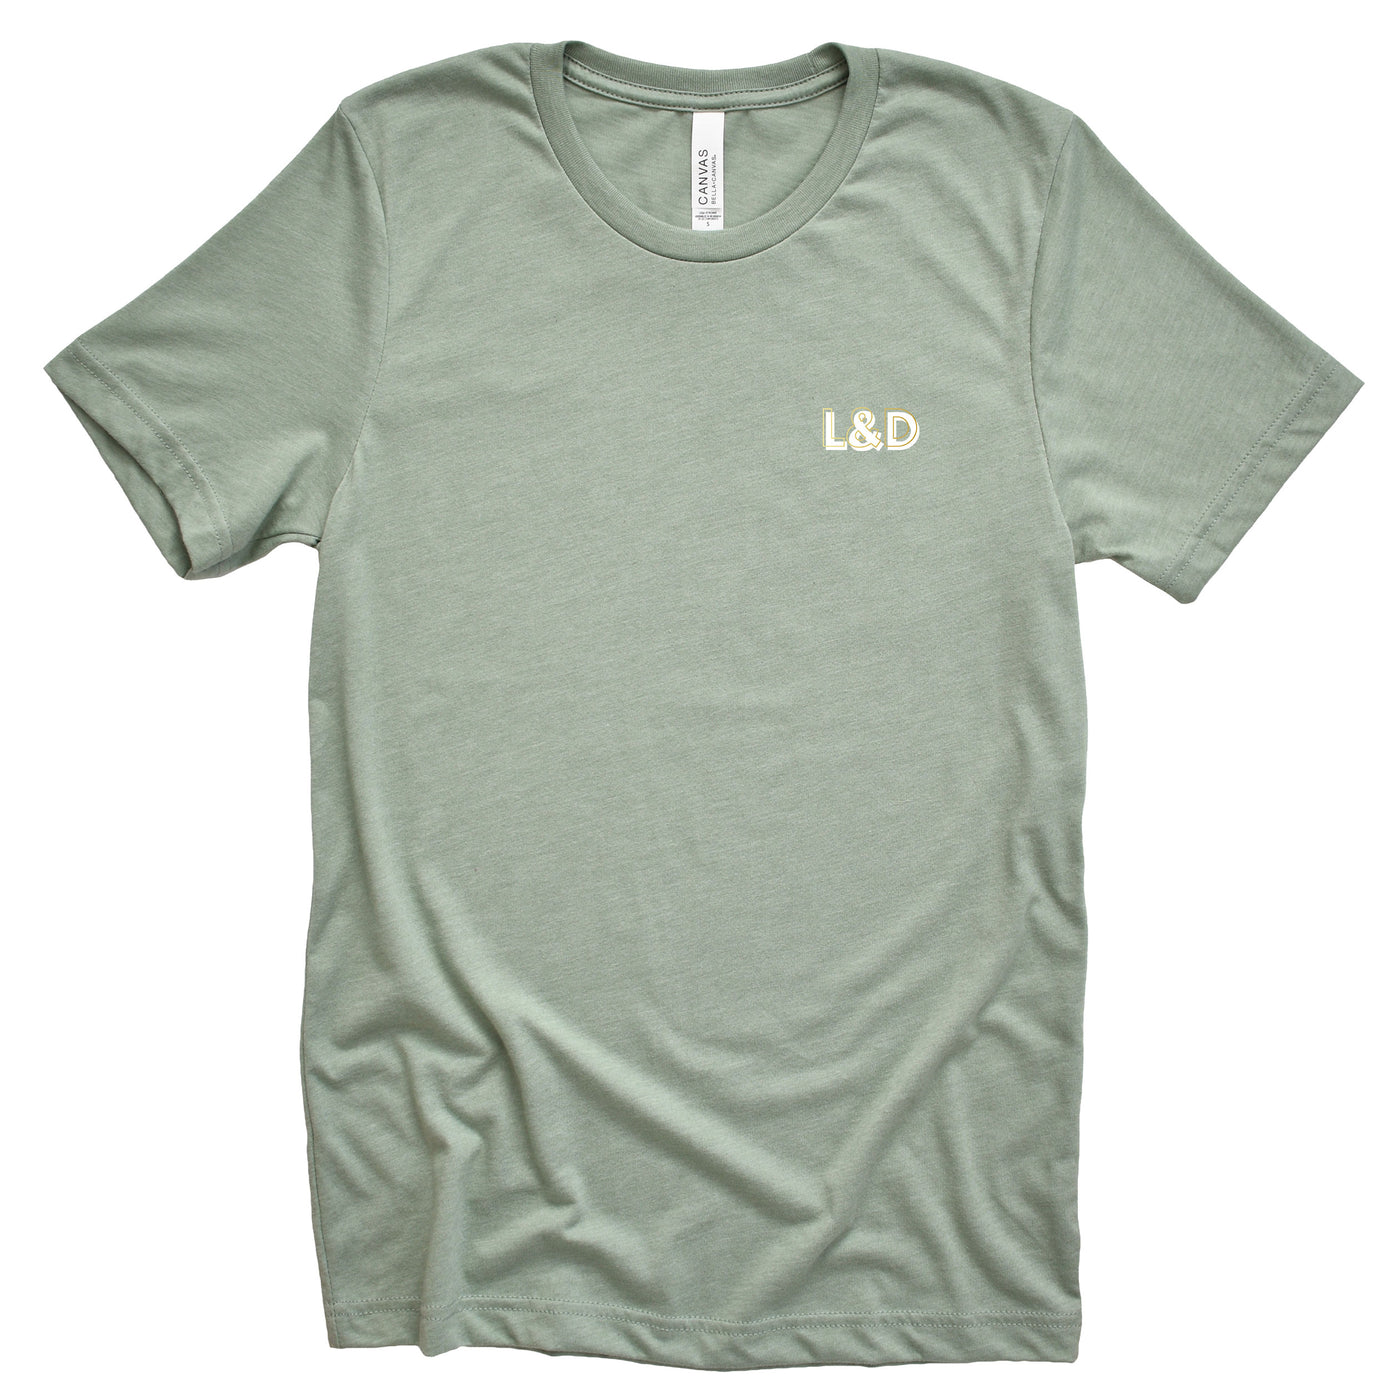 L&D Creds - Shirt